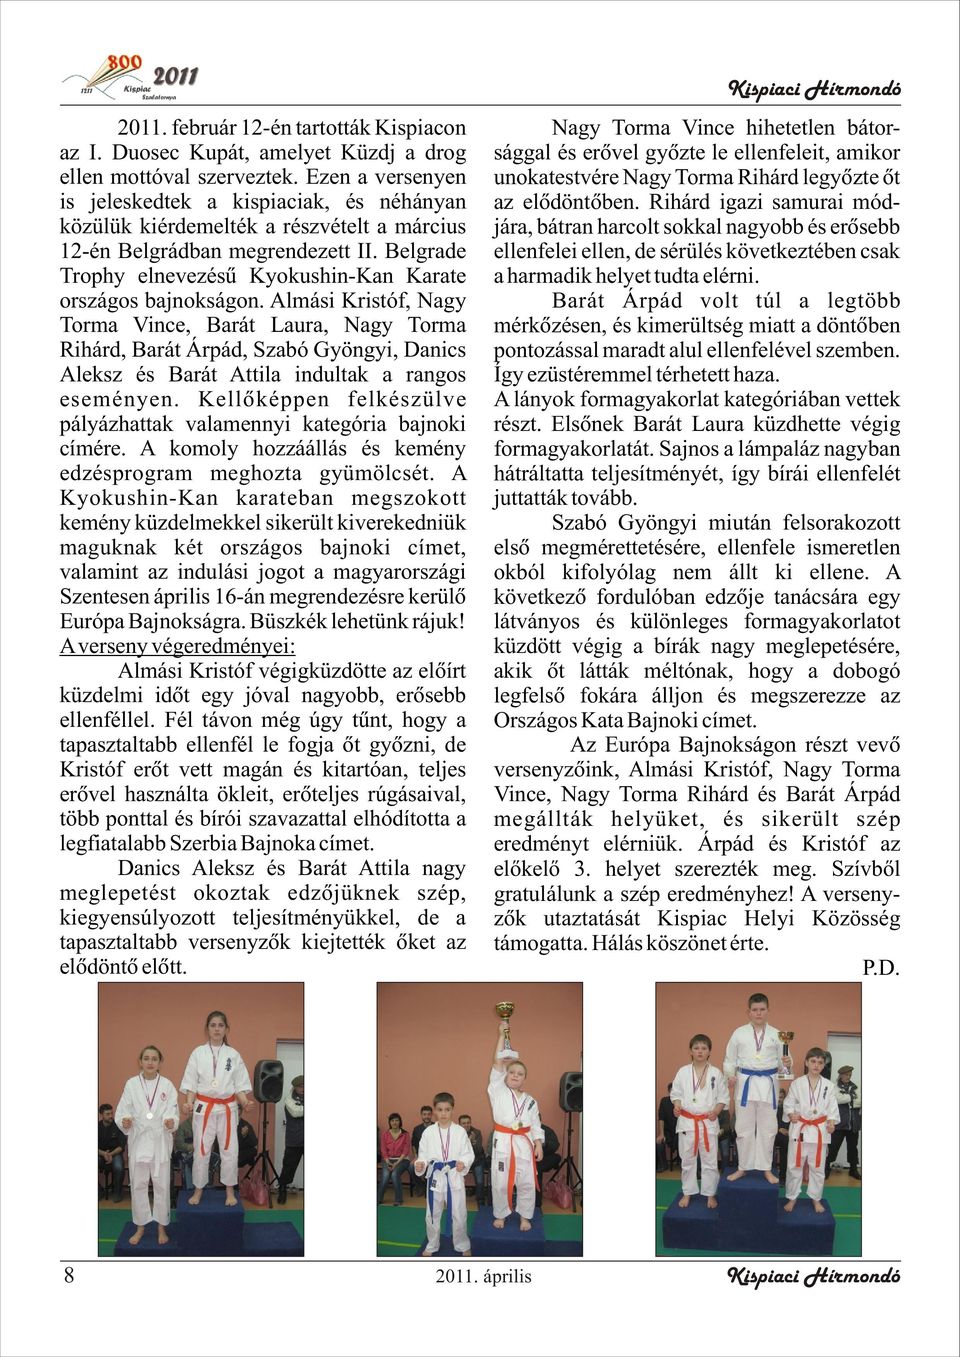 Belgrade Trophy elnevezésû Kyokushin-Kan Karate országos bajnokságon.